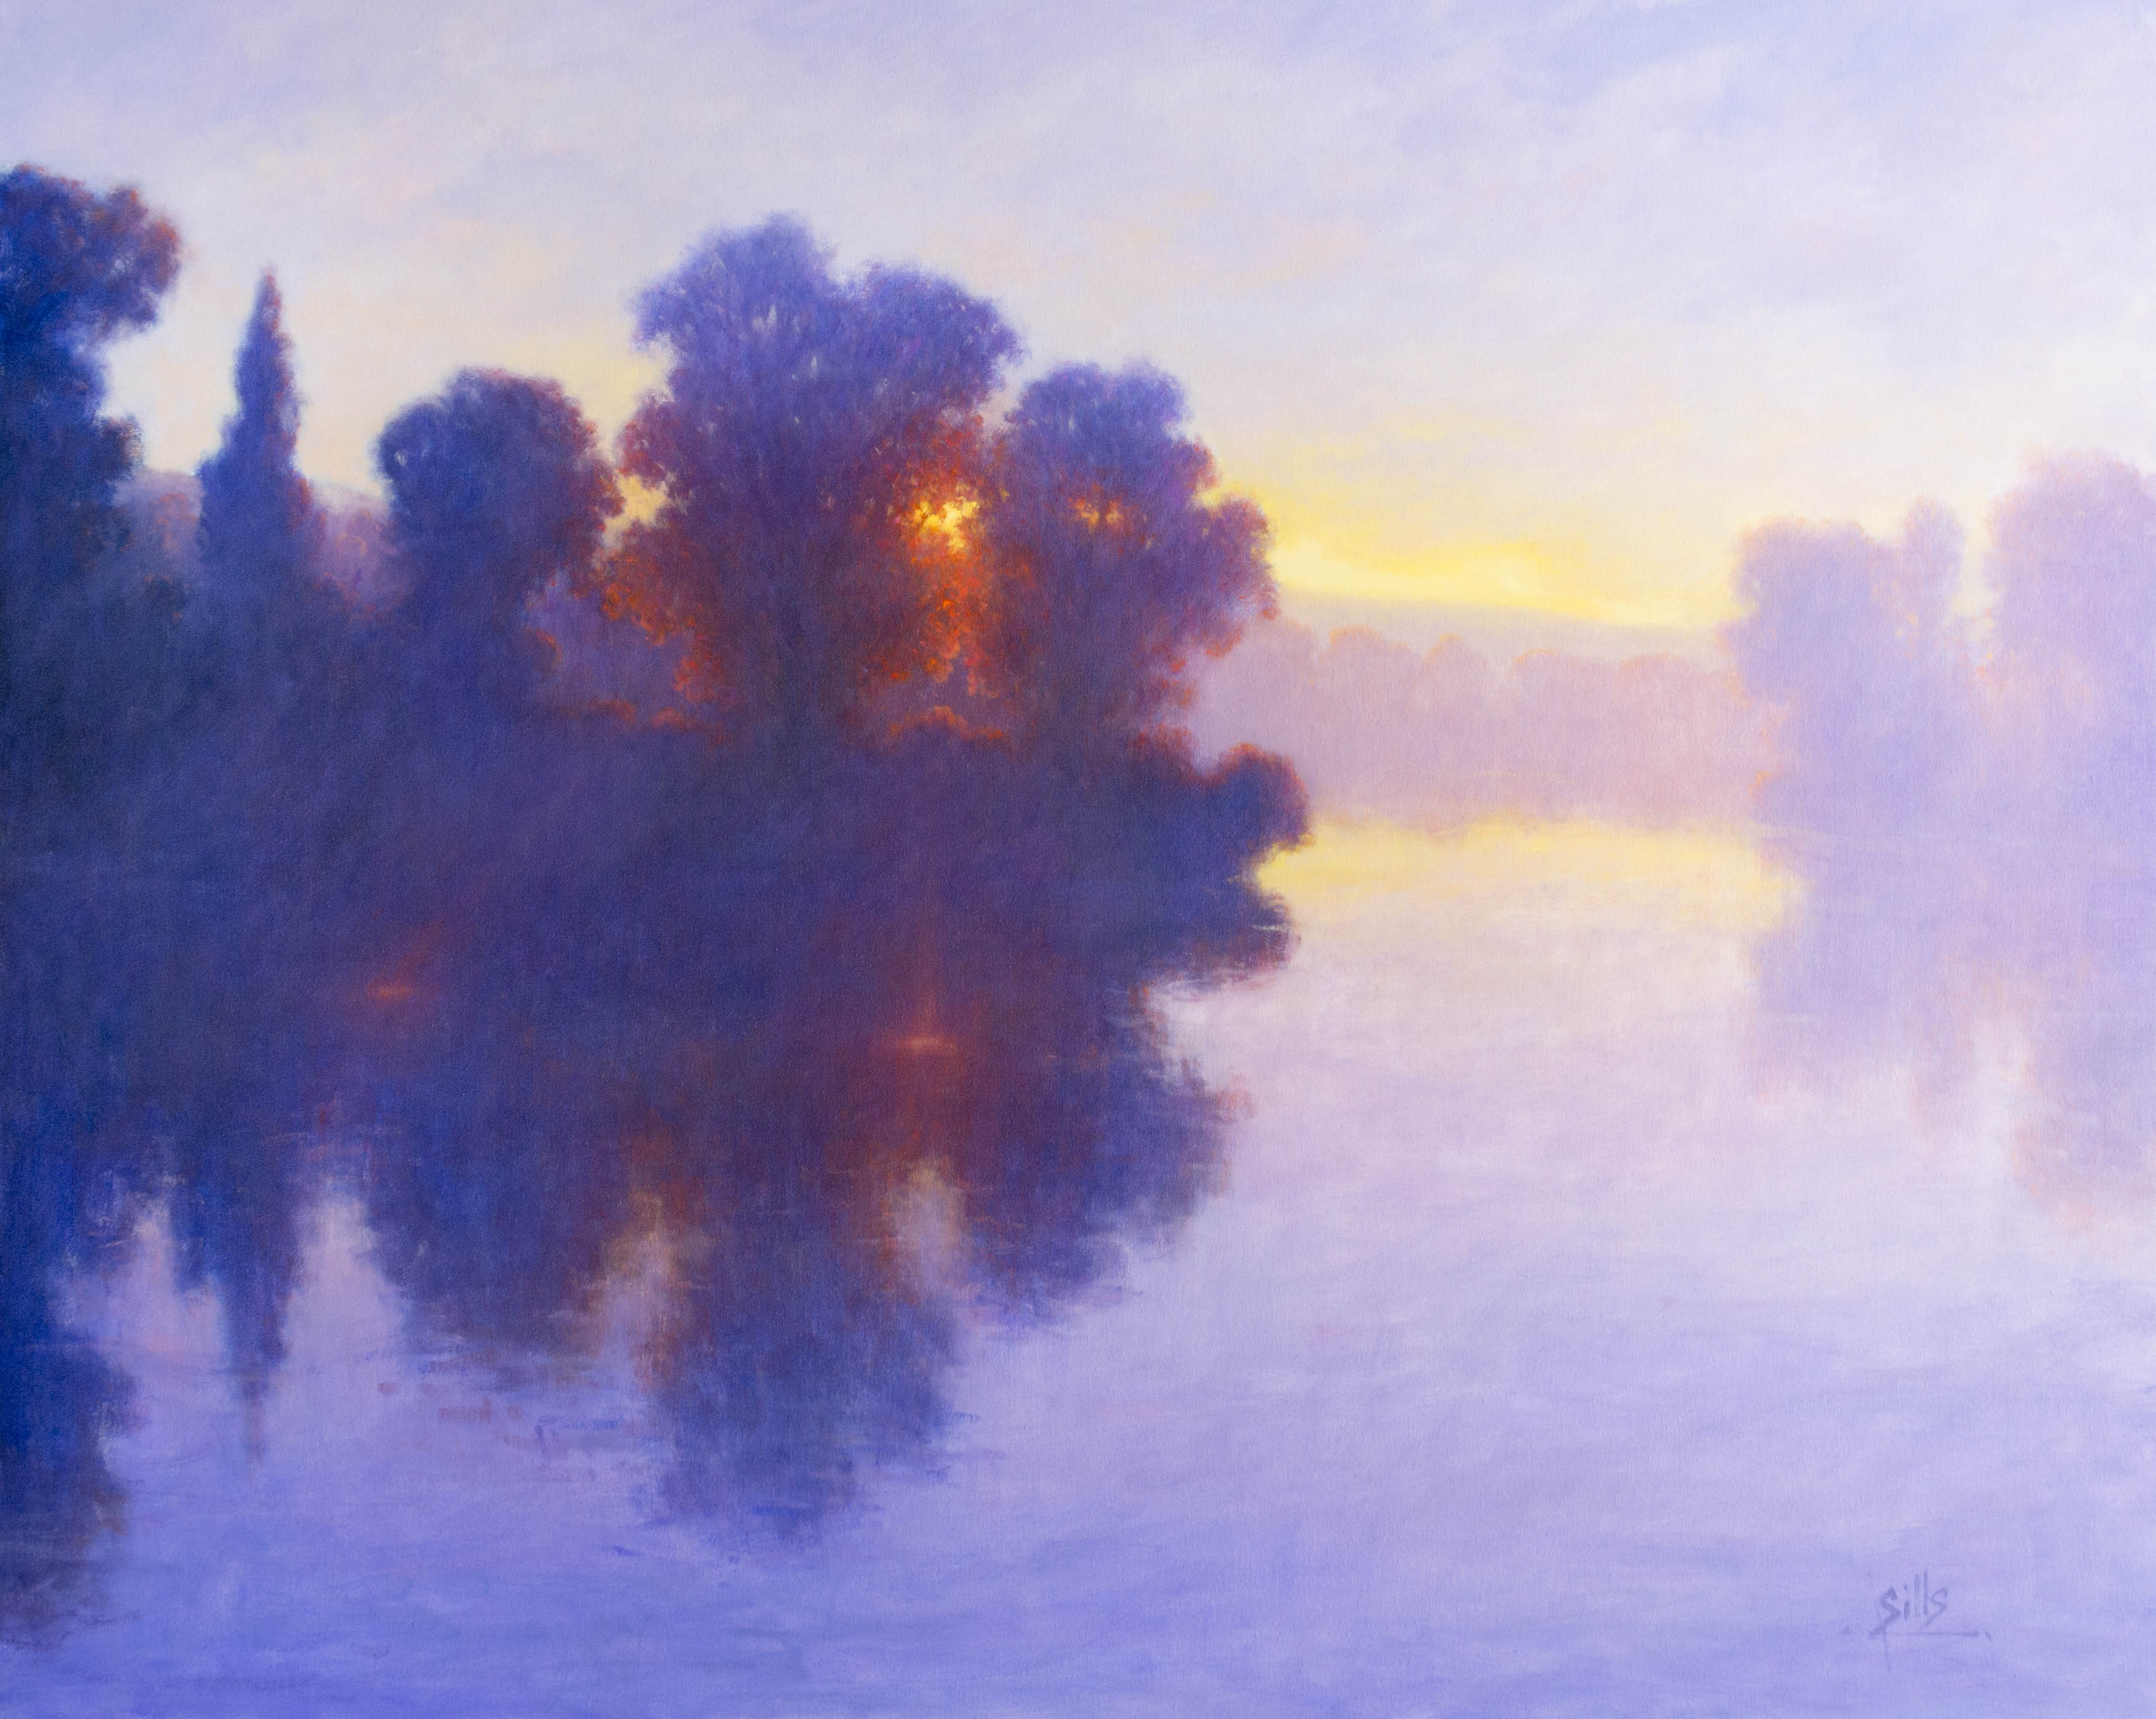 Sills, "Crimson Sunset," Oil on Canvas, 48 x 60 in.